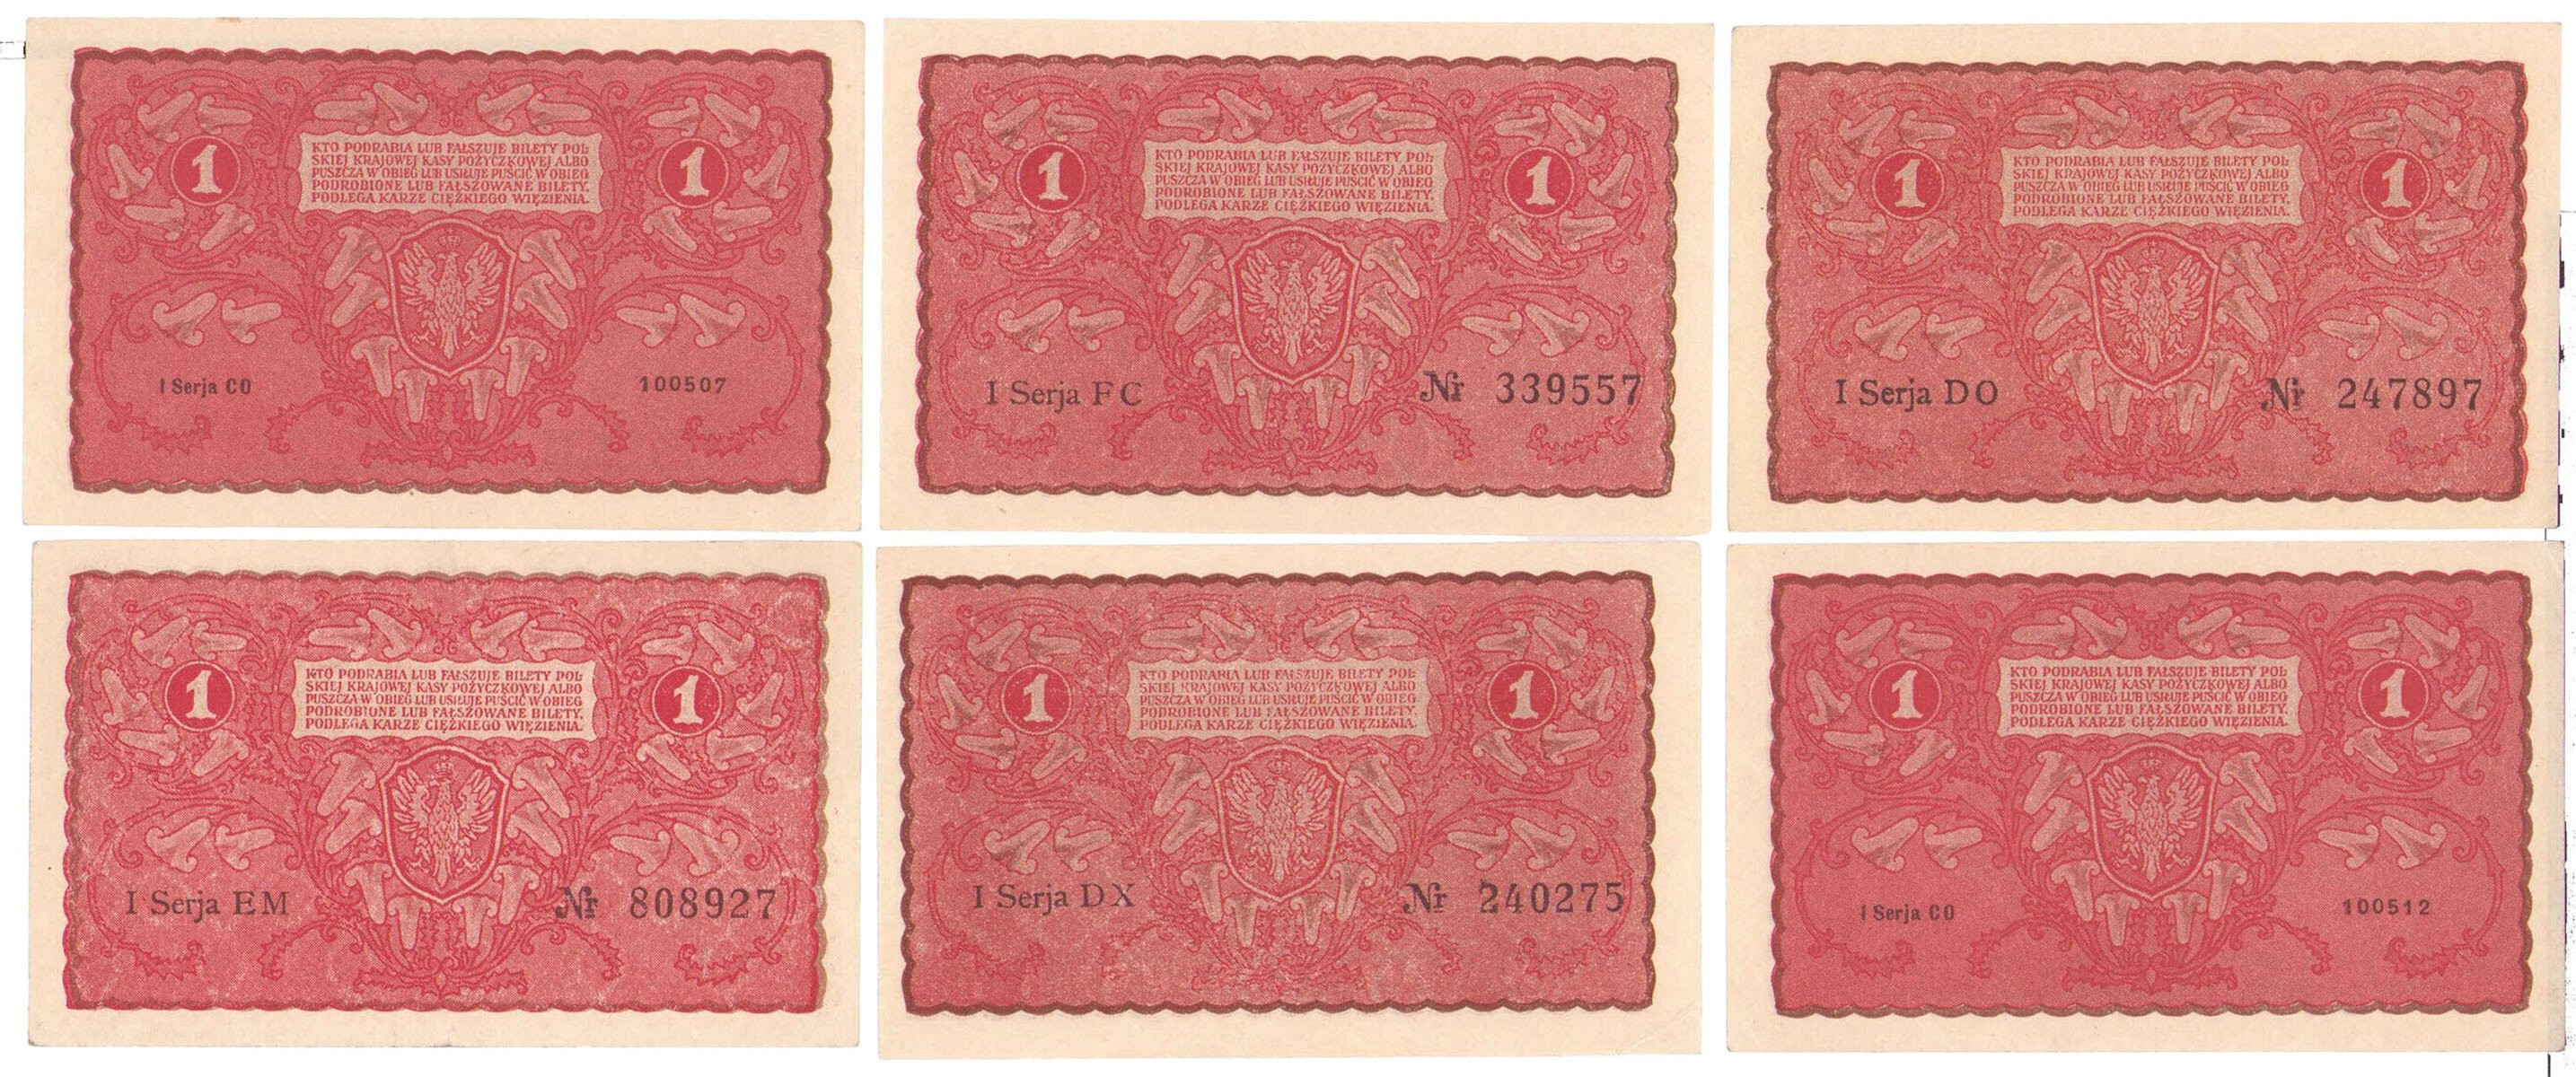 1 marka polska 1919, zestaw 6 banknotów